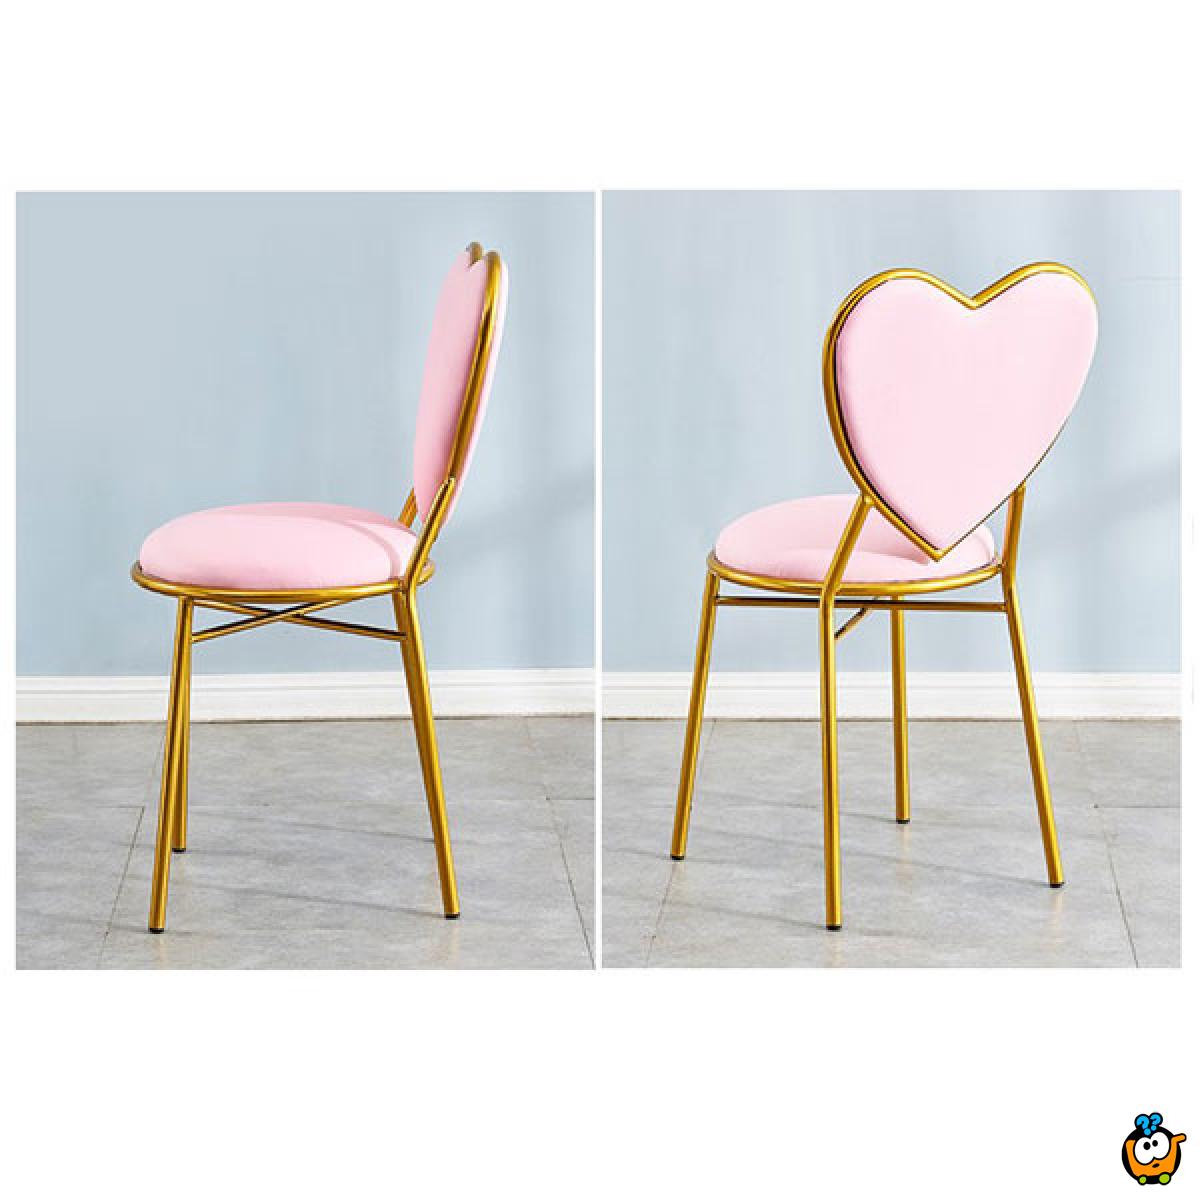 HEART DESIGN - Moderna stolica u obliku srca